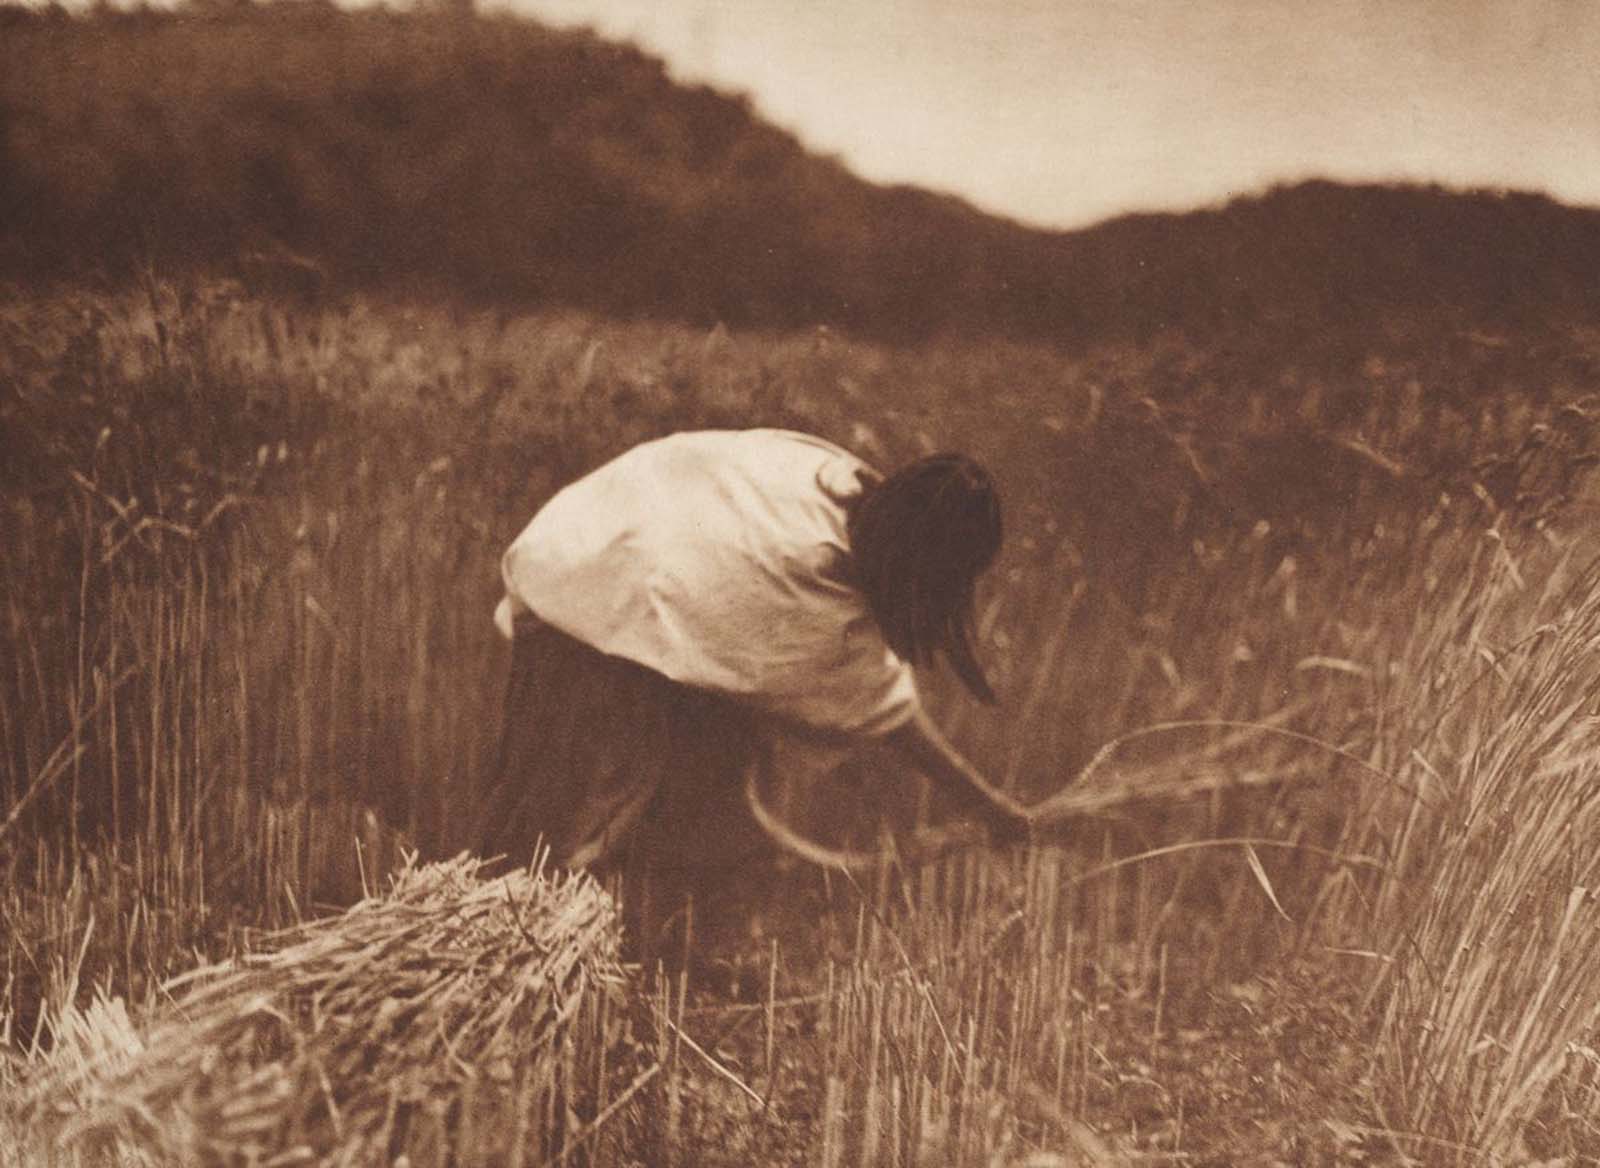 An Apache woman reaps grain. 1910.